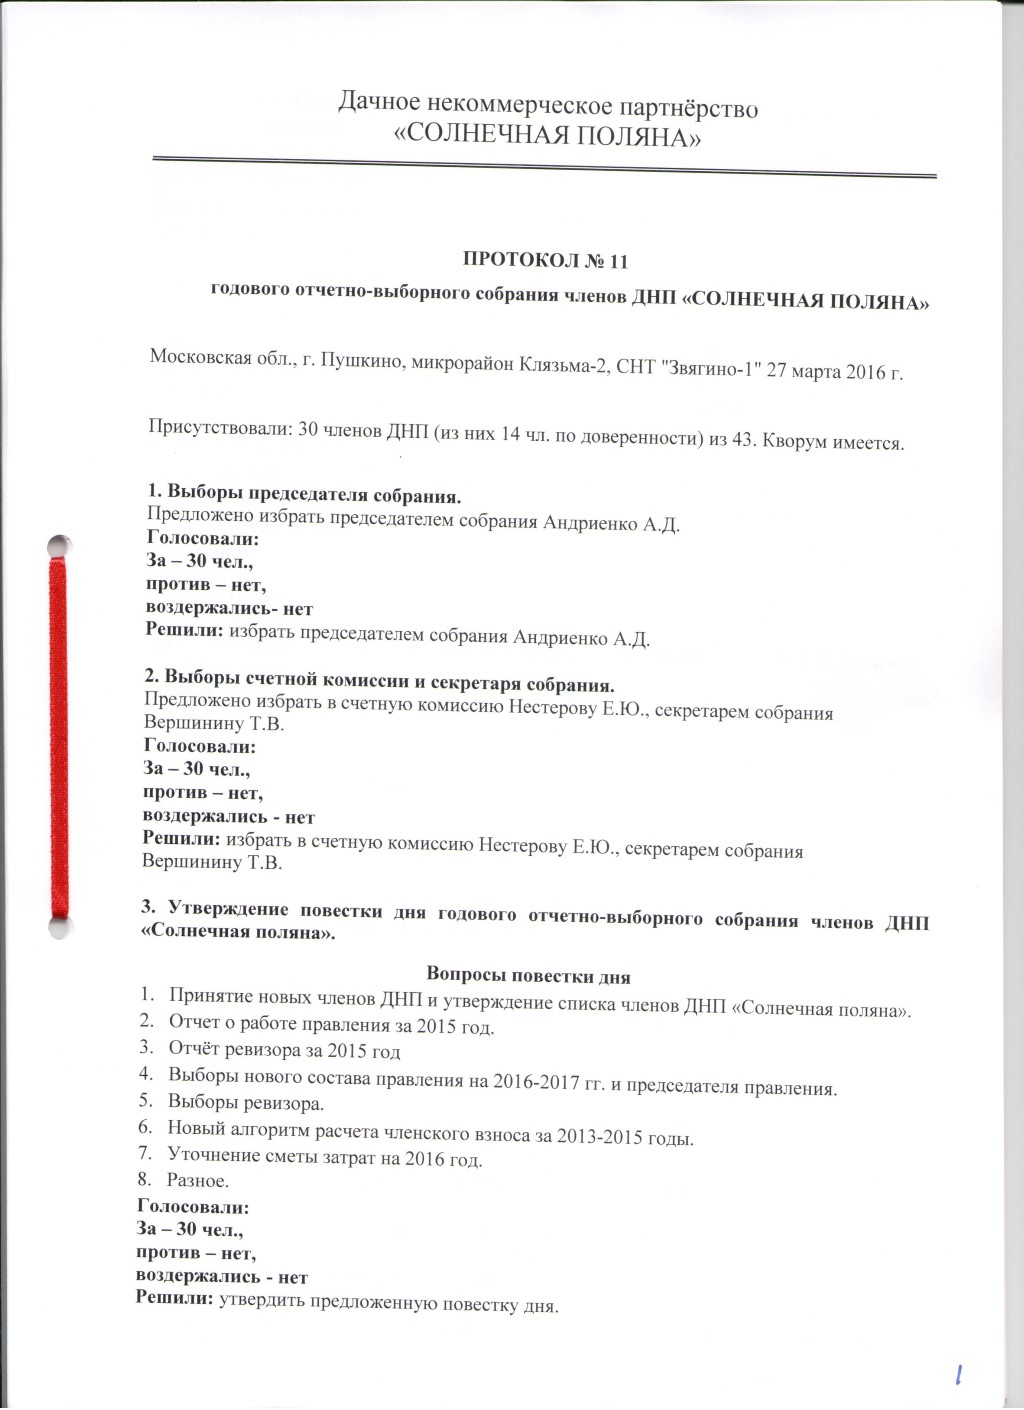 Протокол №11 годового отчётно-выборного собрания членов ДНП "Солнечная поляна".